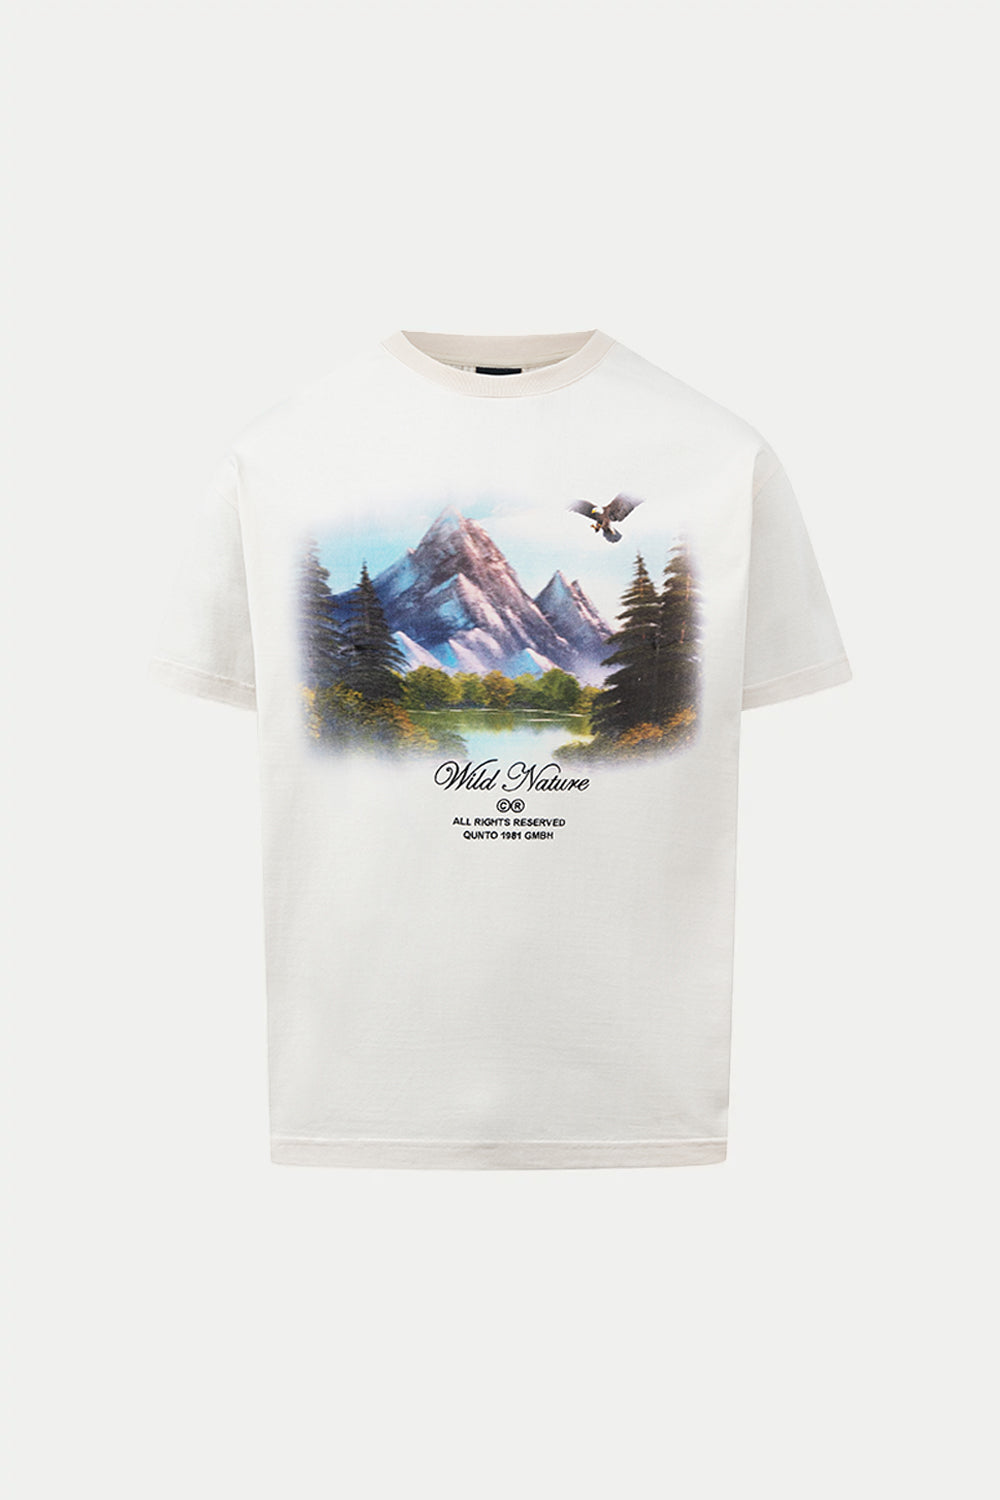 Wild Nature Portrait T-Shirt